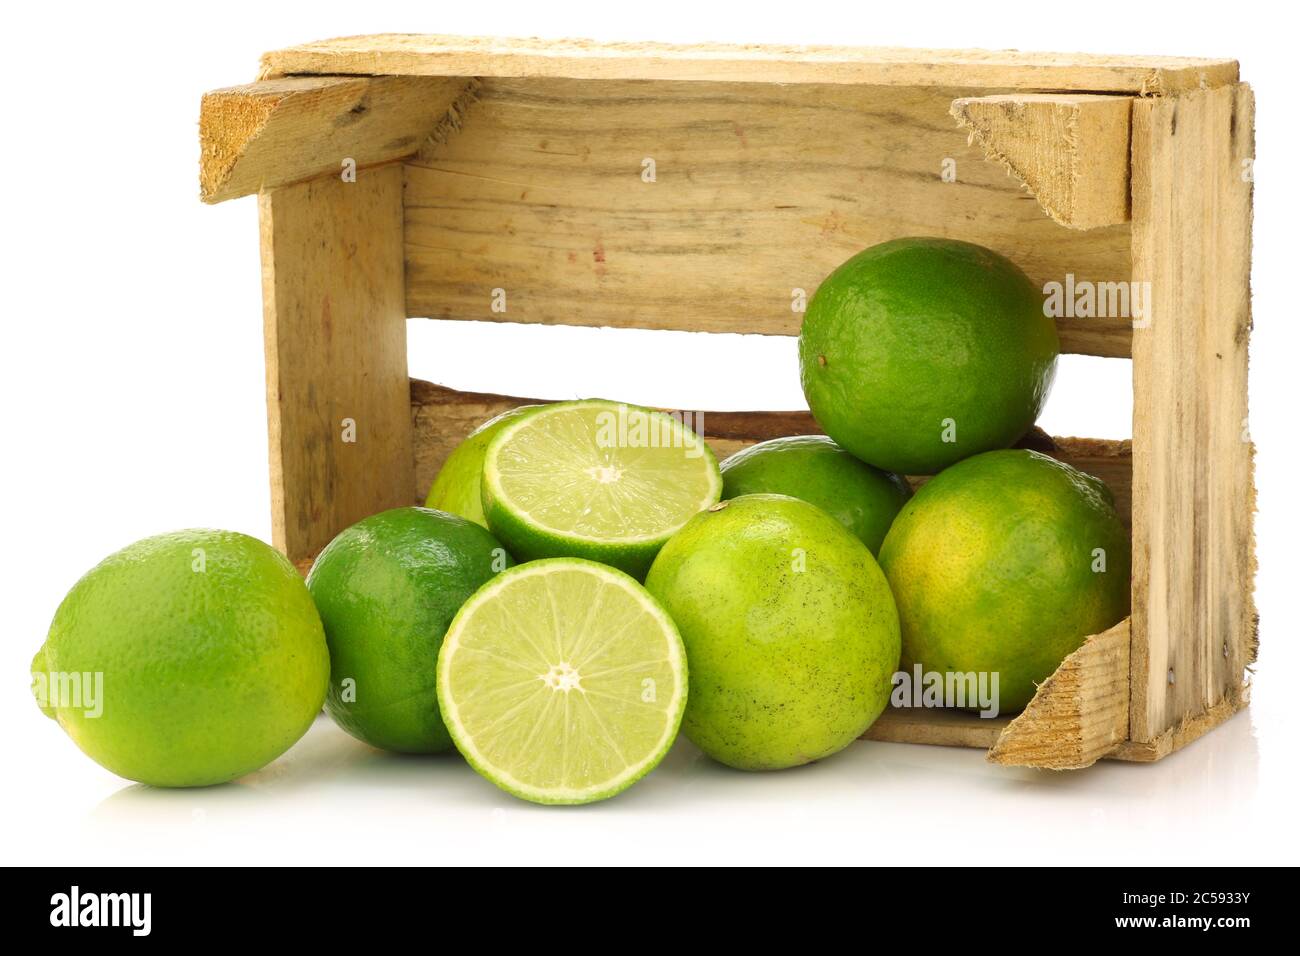 fruits frais de lime dans une caisse en bois sur fond blanc Banque D'Images